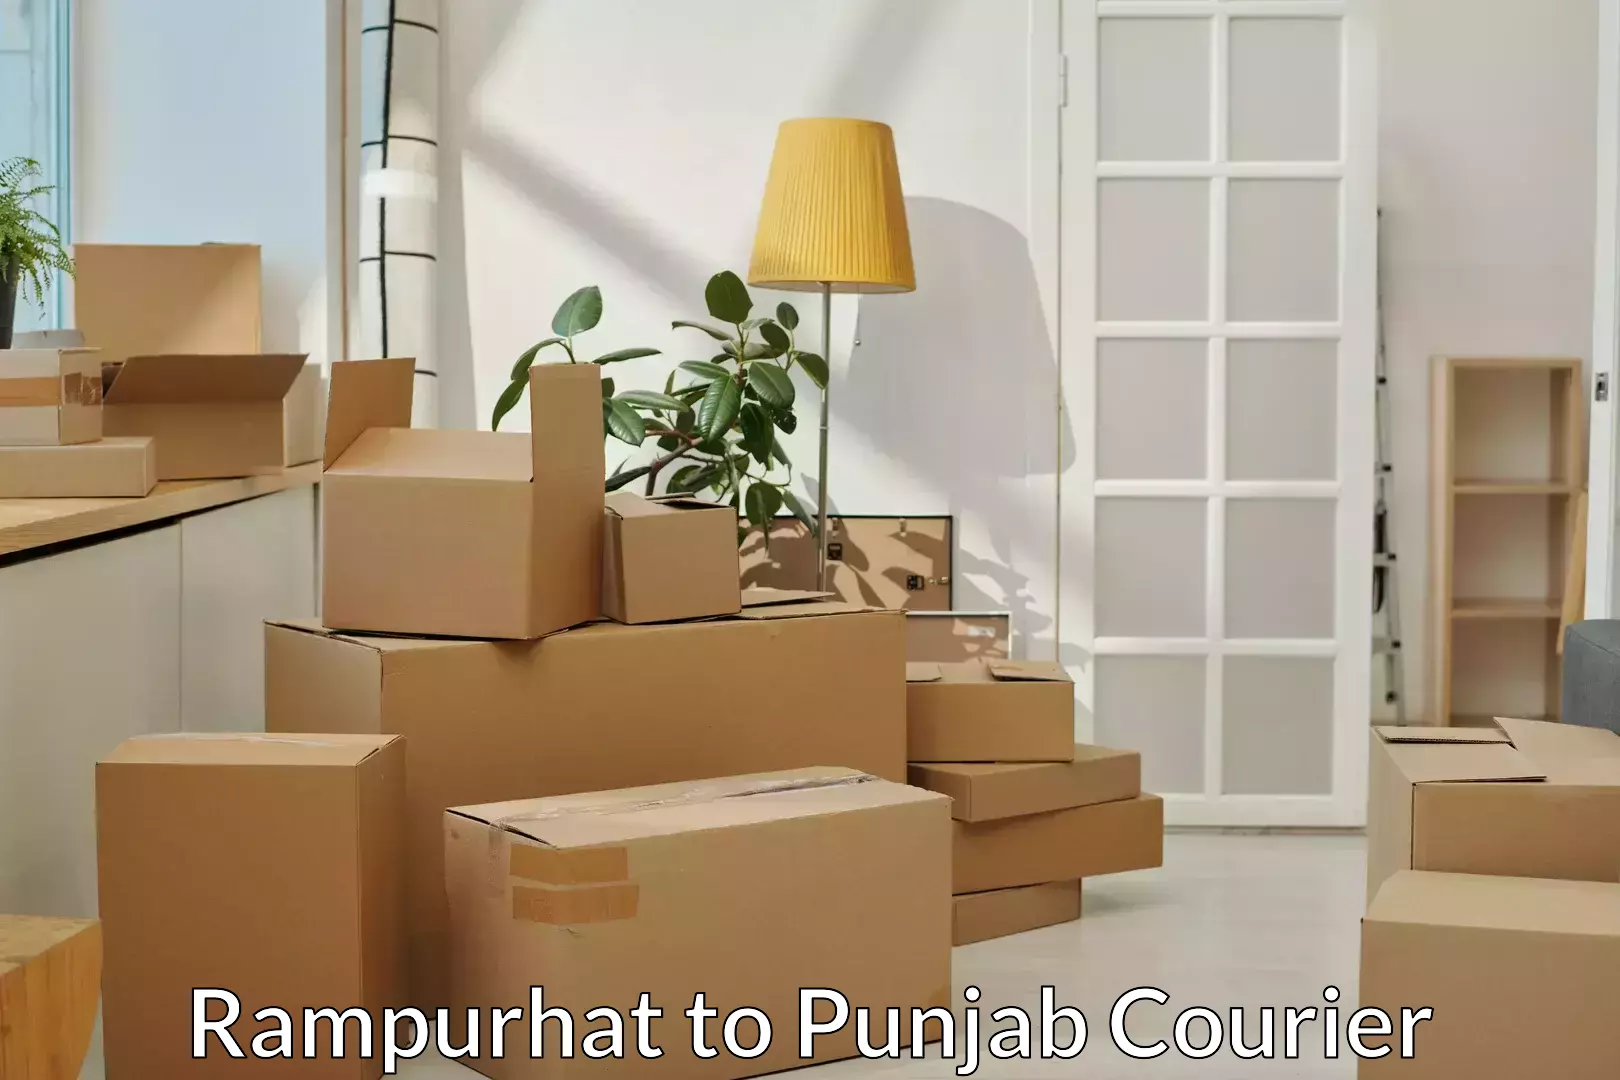 Furniture moving experts Rampurhat to Sangrur